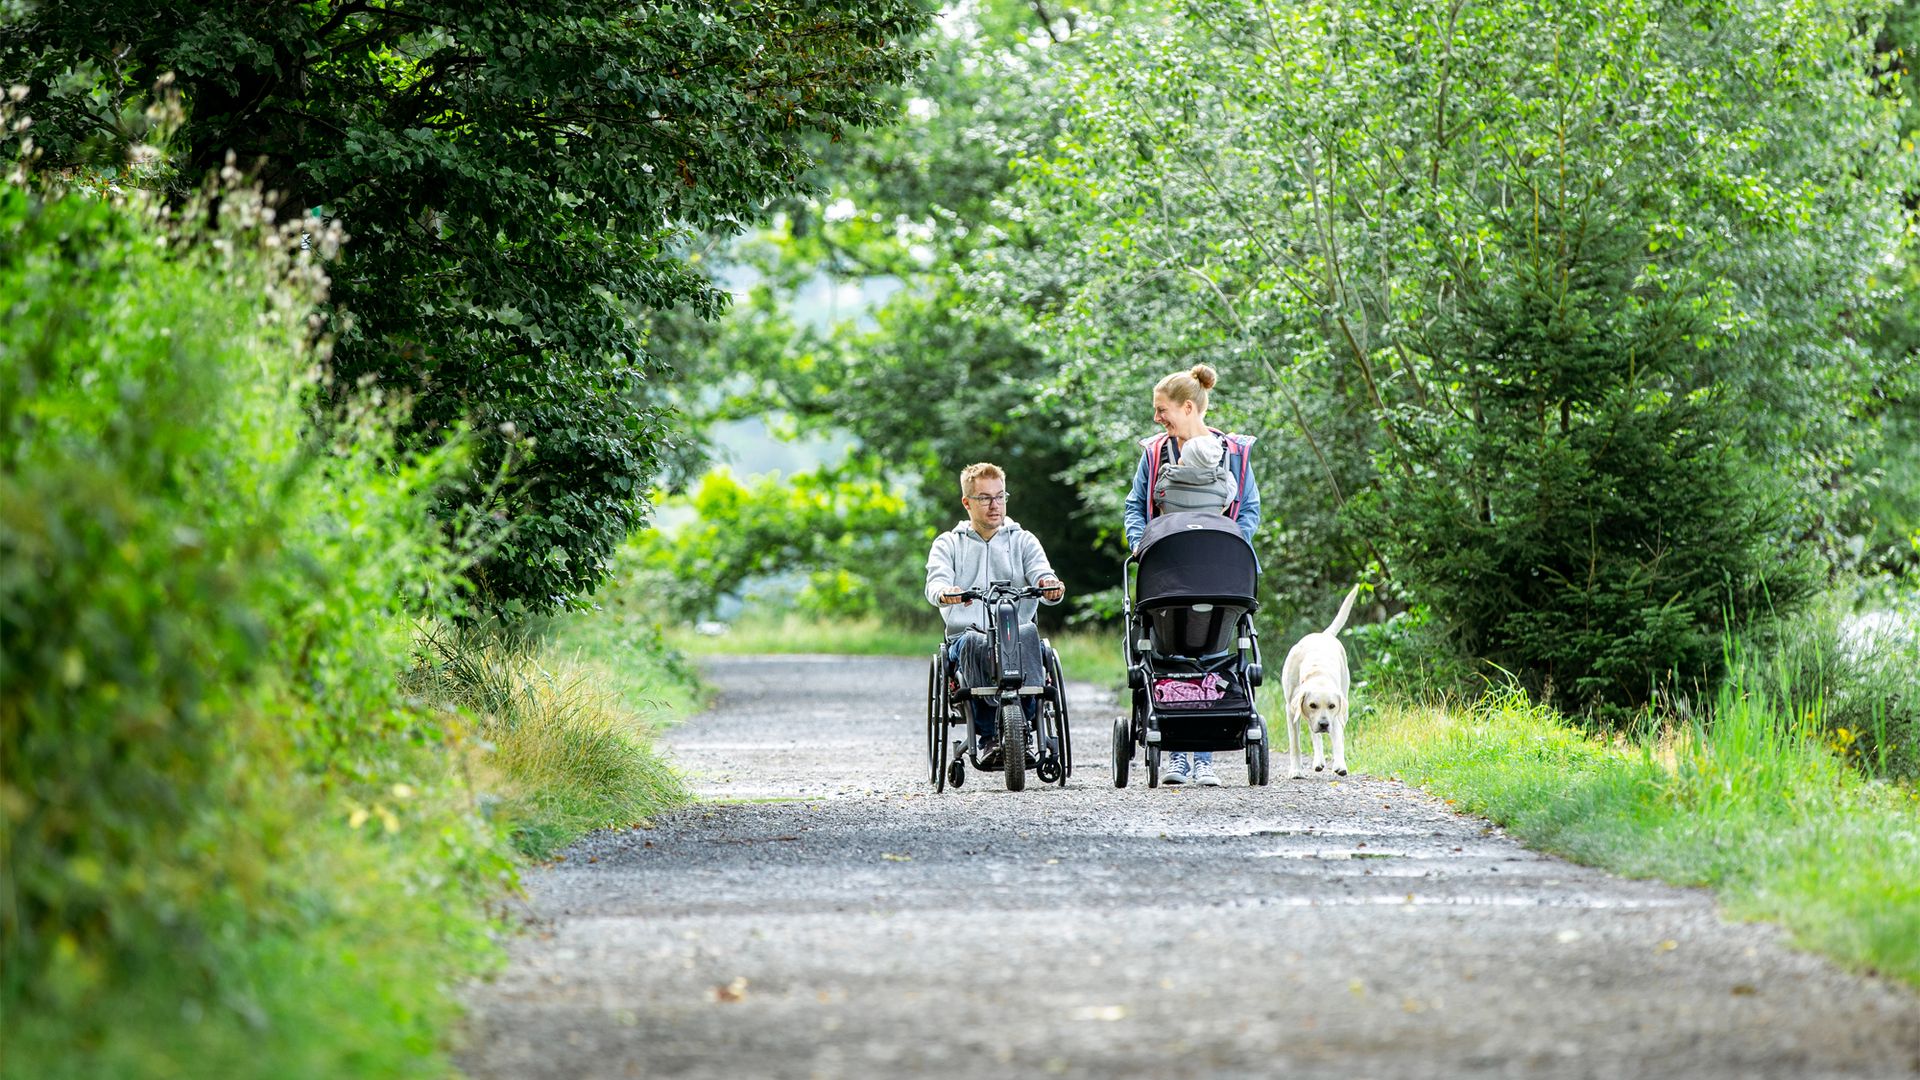 Ein Mann in einem Handbike und eine Frau die einen Kinderwagen schiebt laufen auf einem breiten Wanderweg auf den Fotografen zu. Neben ihnen läuft ein hellbrauner Hund.